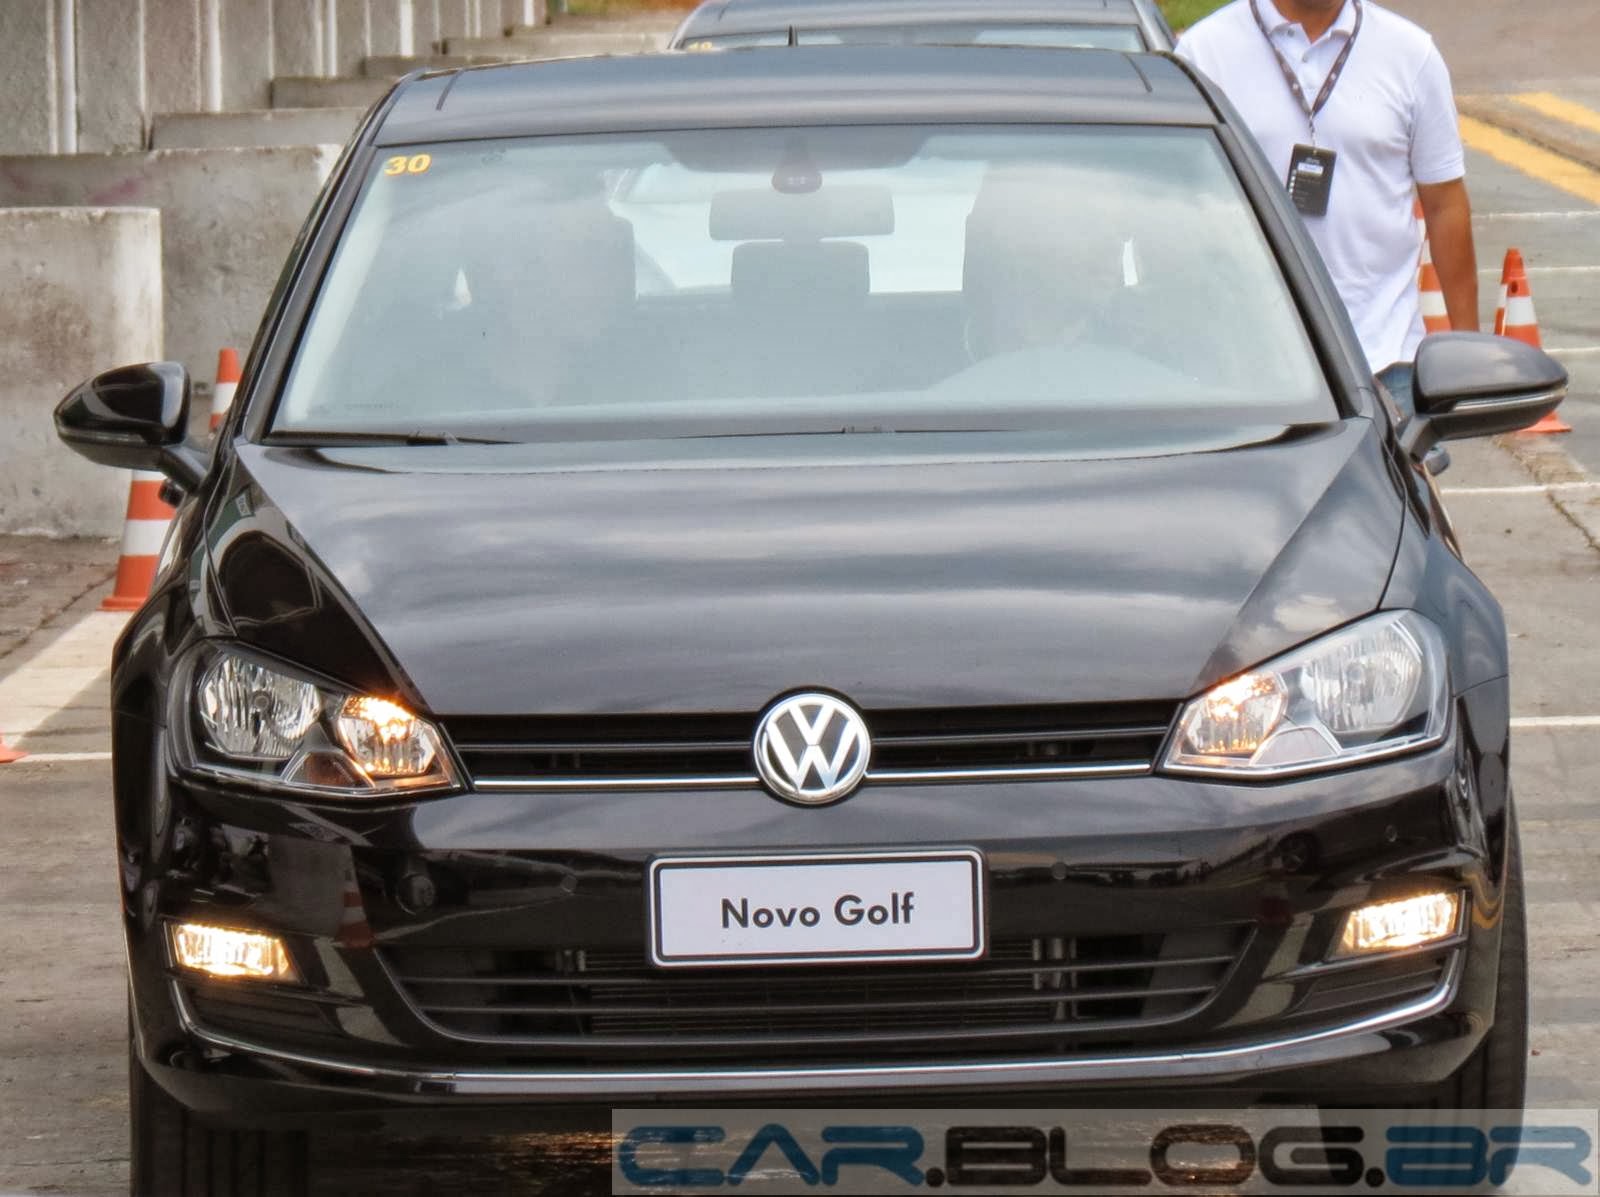 Carro da semana, opinião de dono: VW Golf Highline 2014